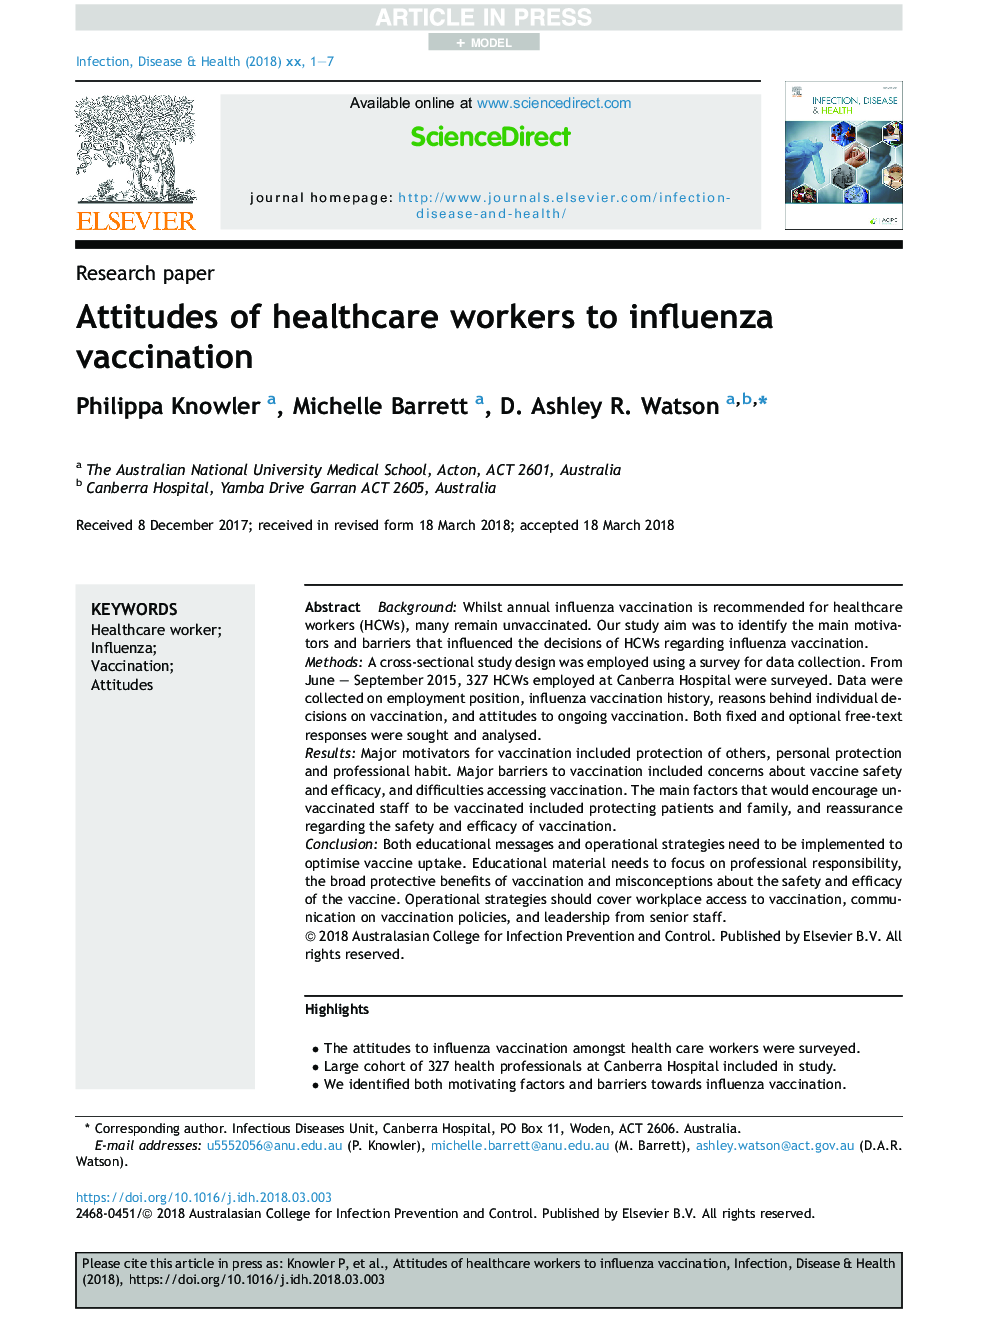 نگرش کارکنان بهداشتی به واکسیناسیون آنفلوانزا 